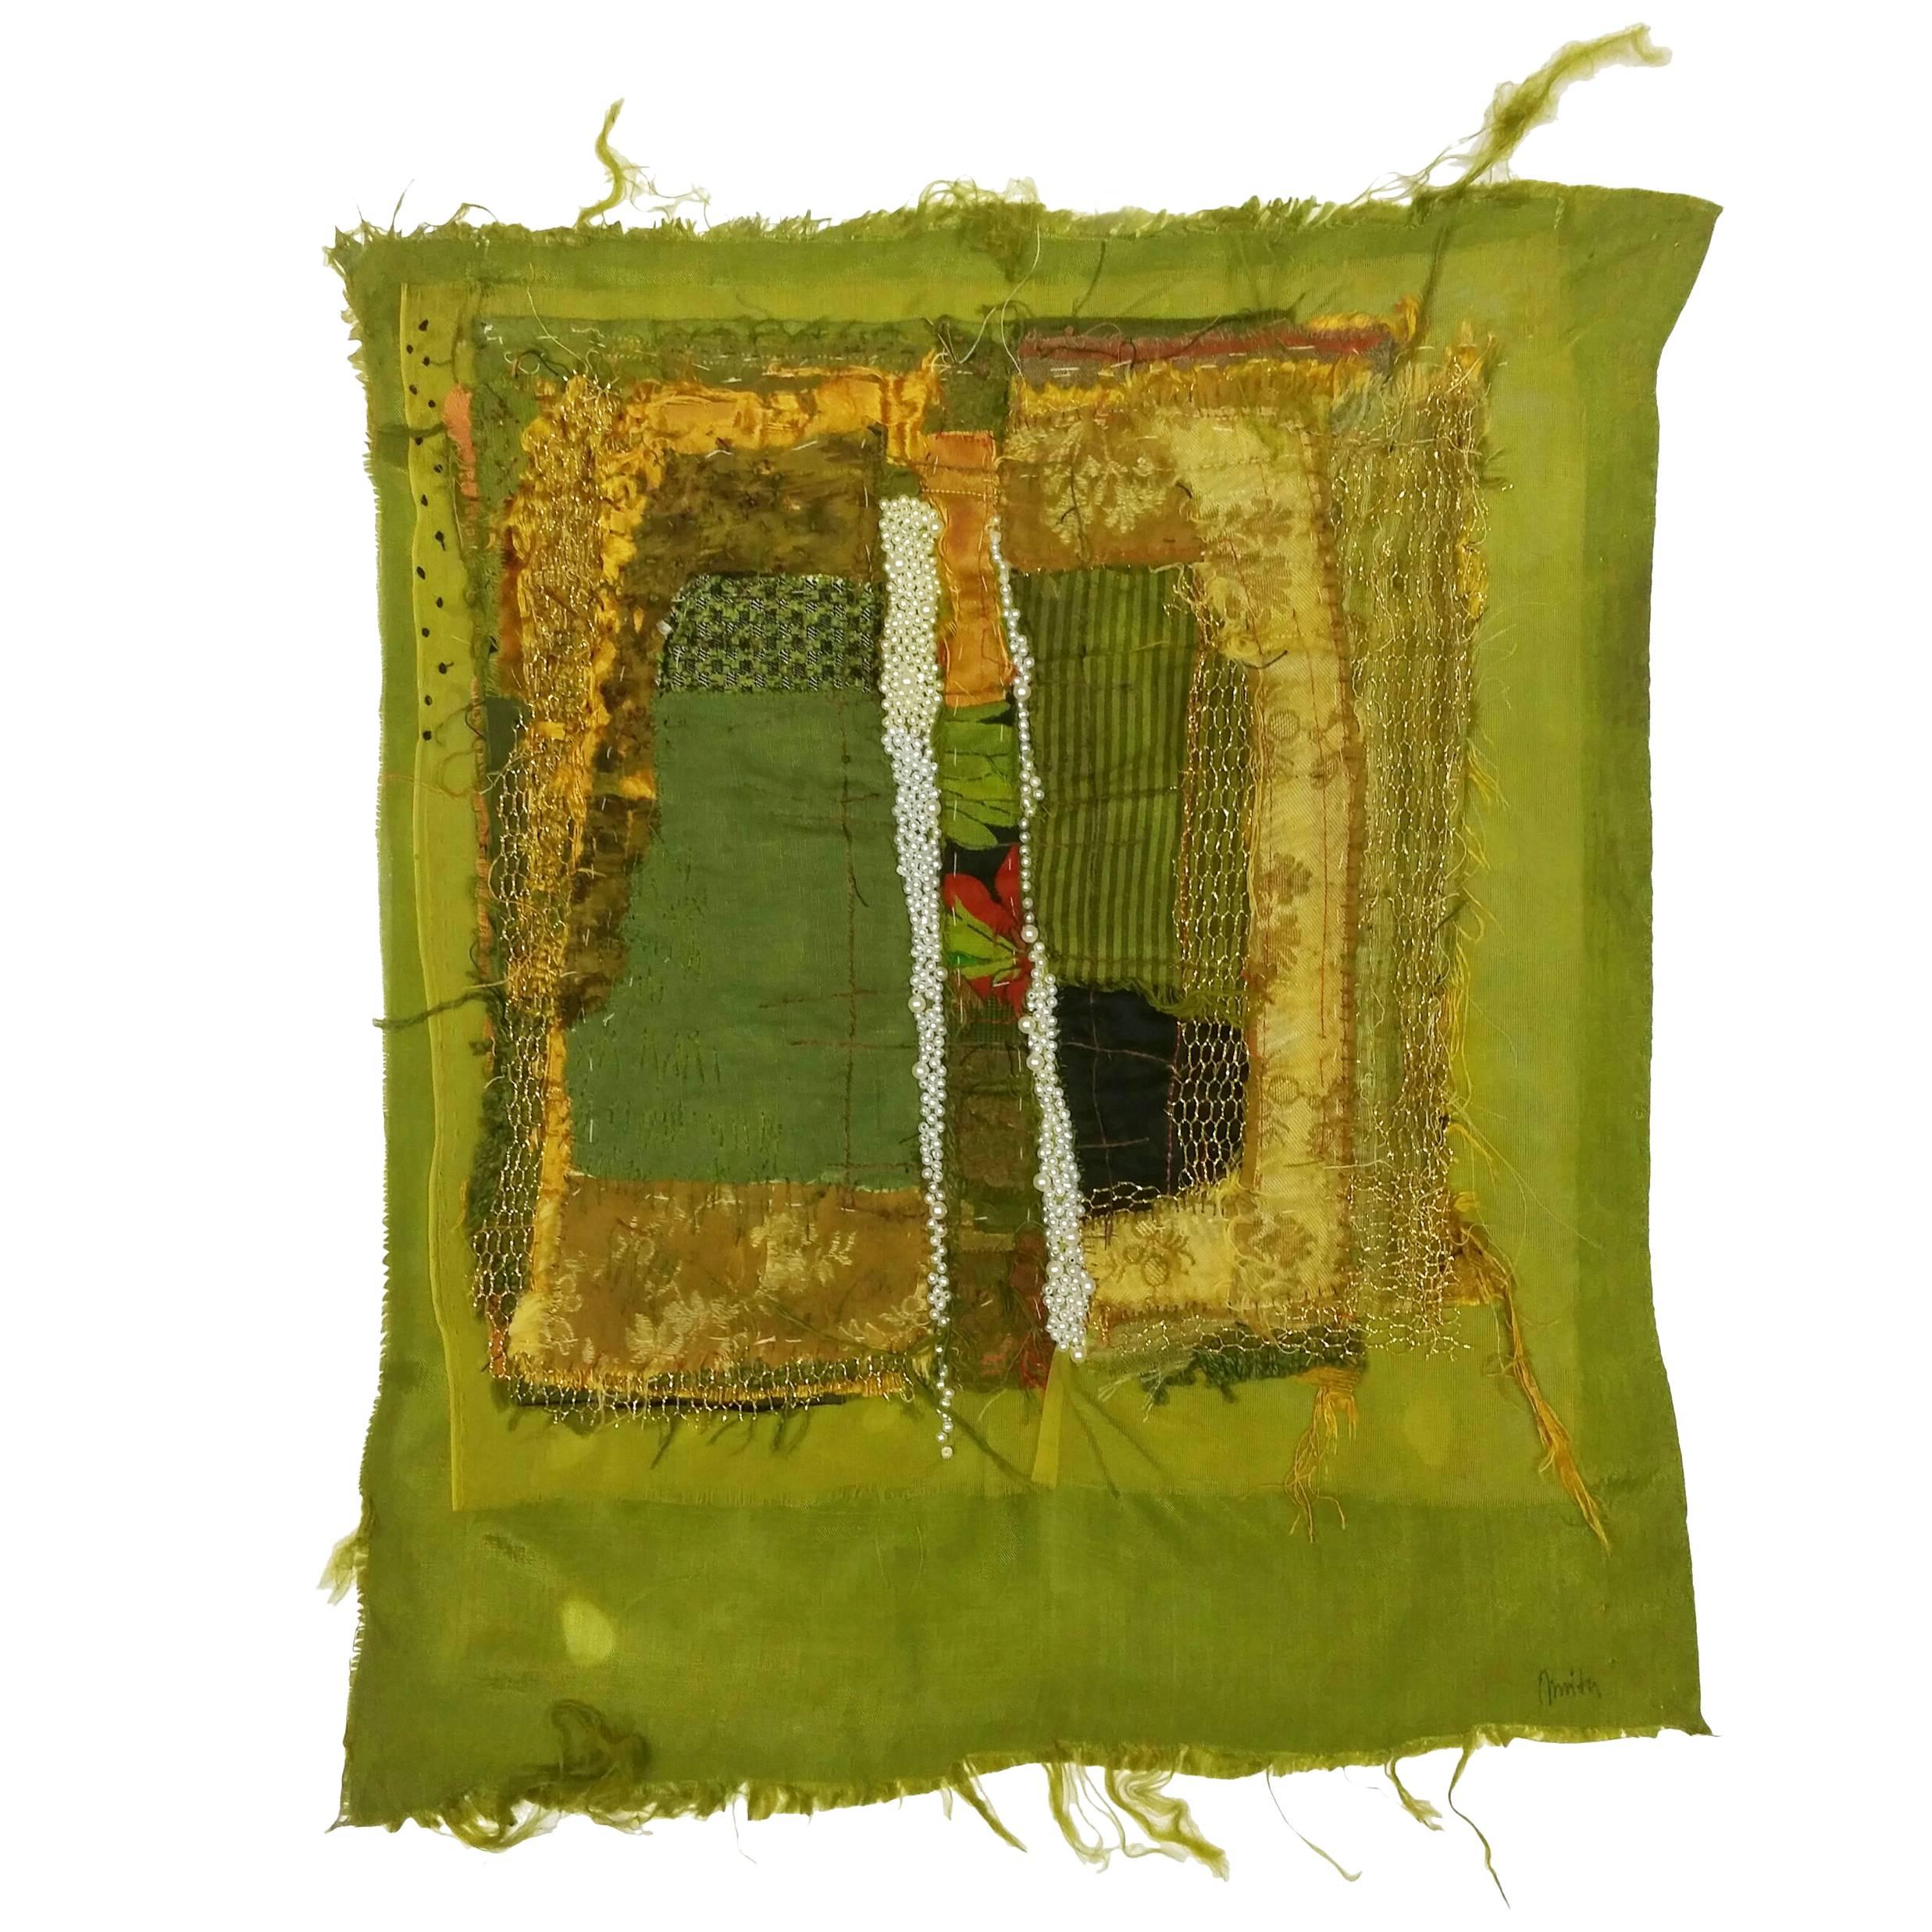 Annita Romano, "River" Textile, 2014